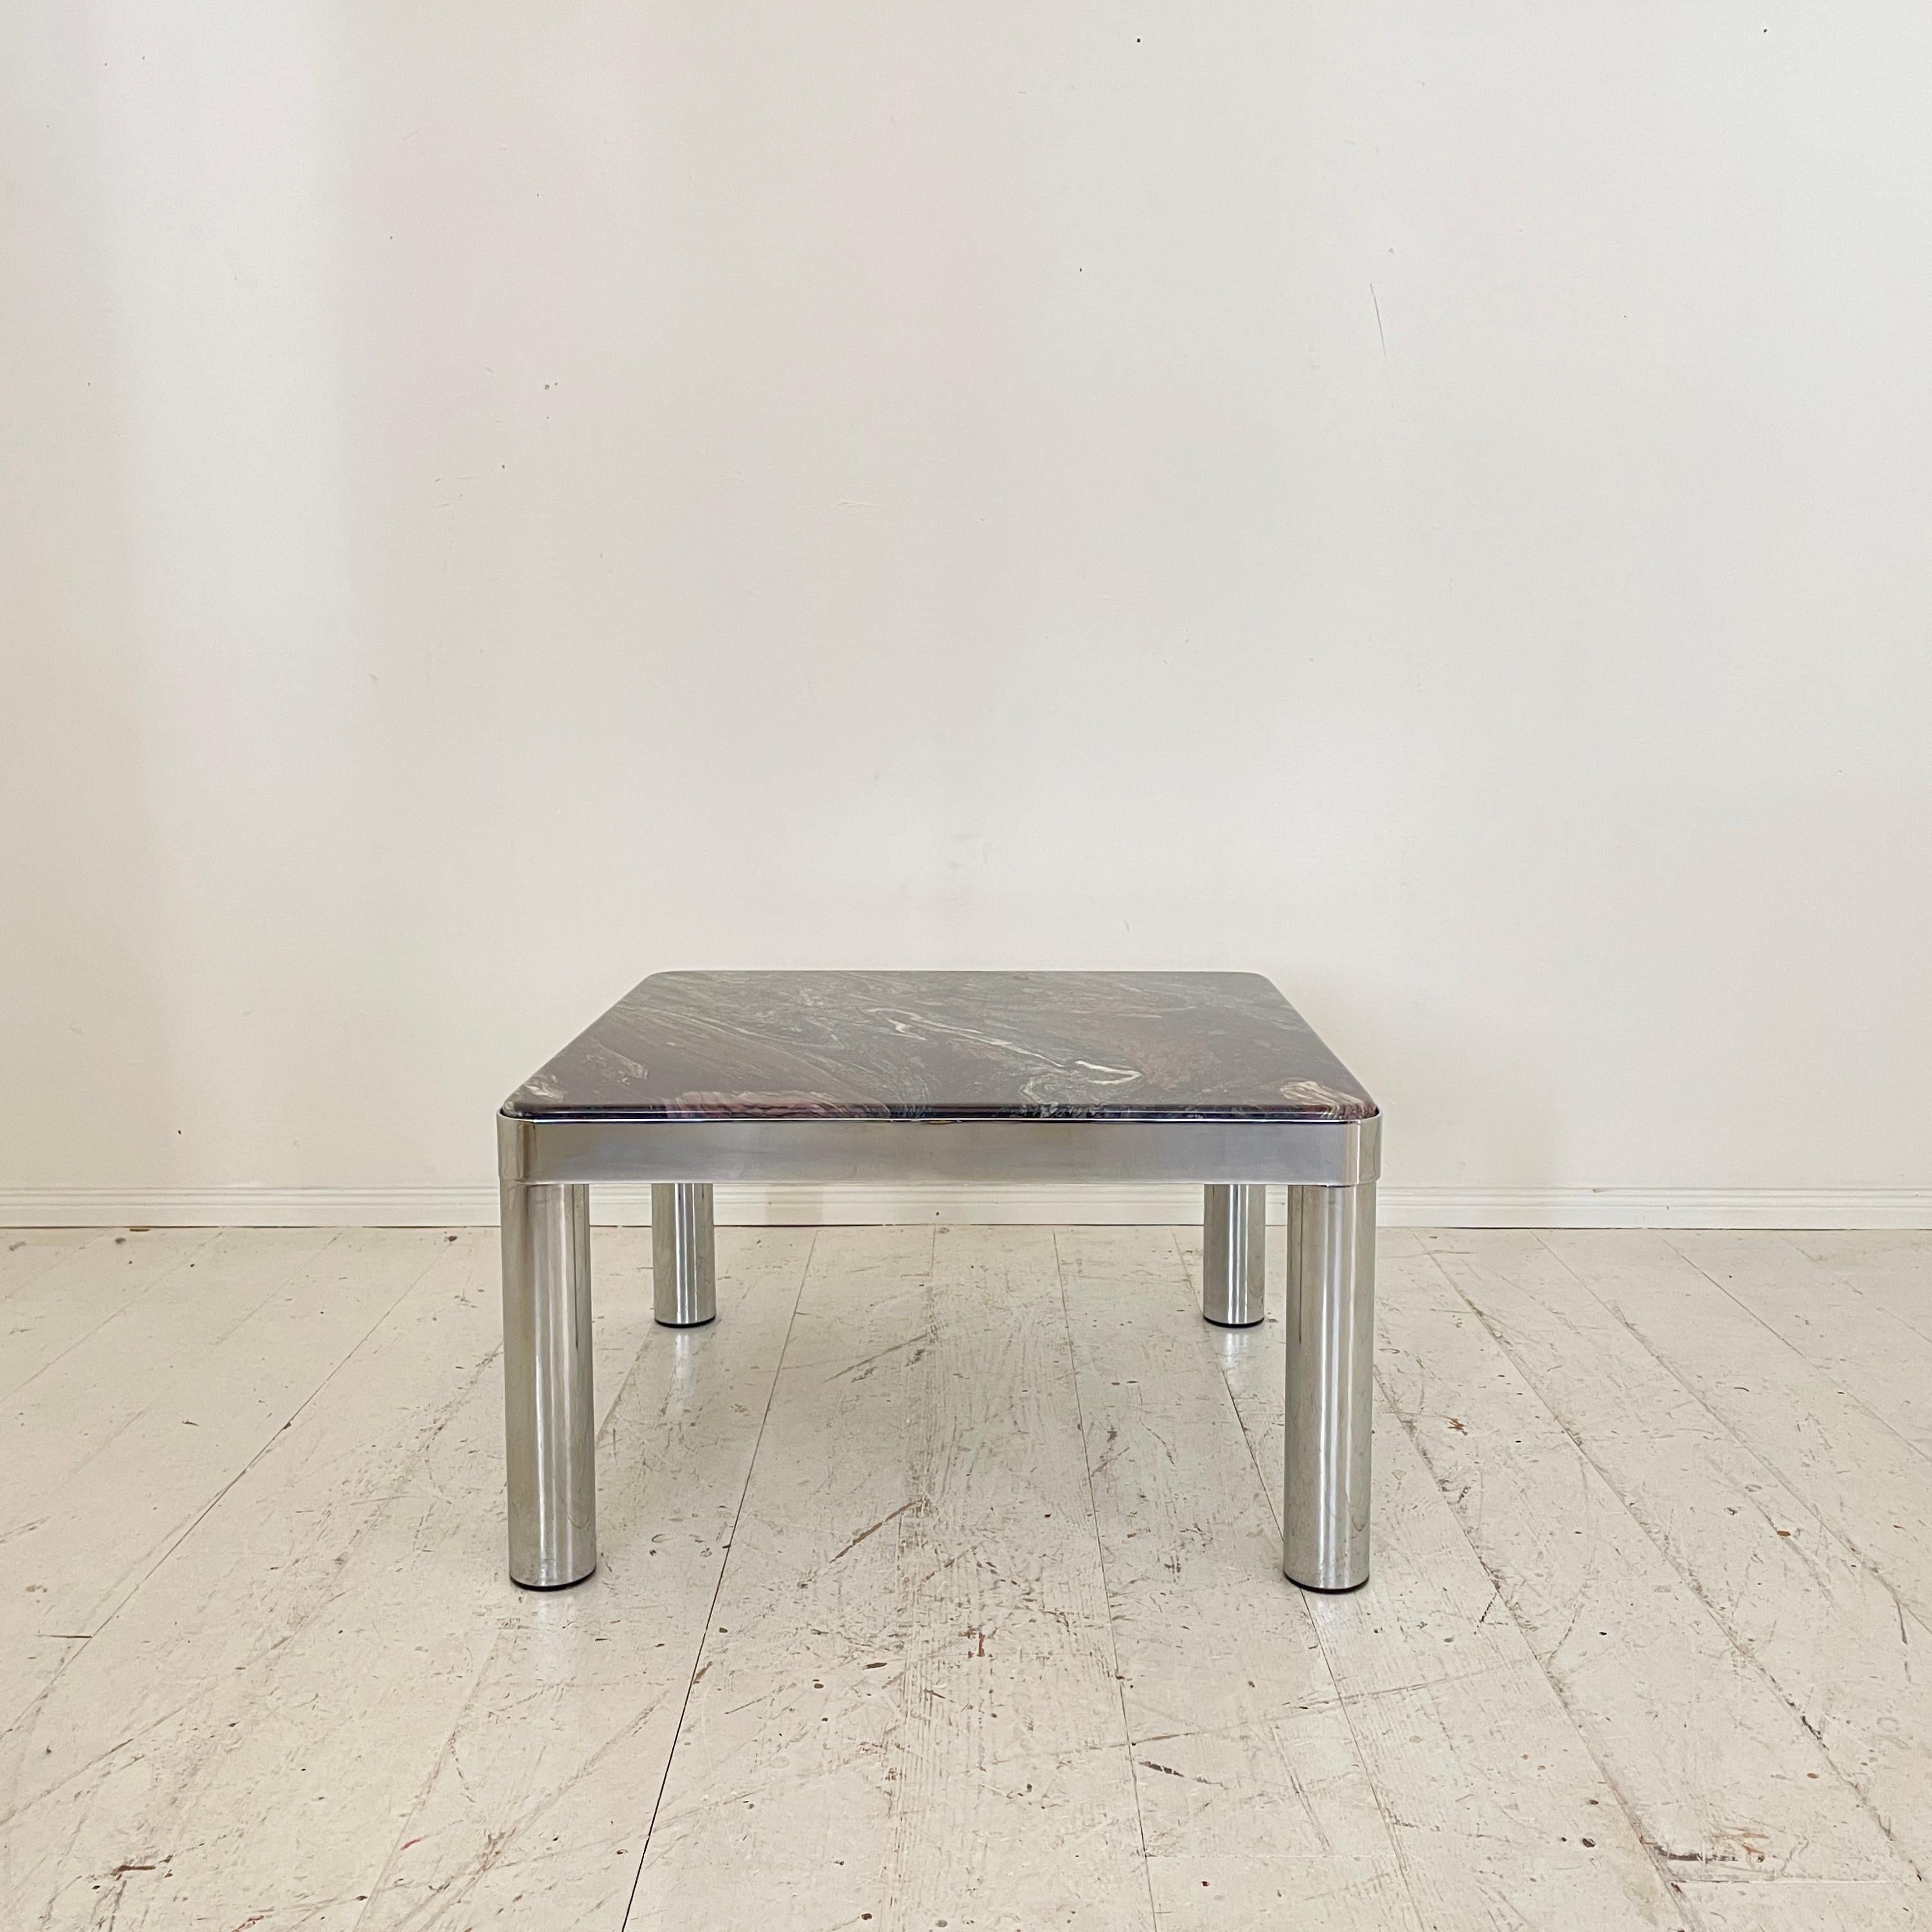 Cette table basse allemande unique du milieu du siècle a été fabriquée en 1971. La table est fabriquée en métal chromé et en marbre.
La table est en parfait état vintage.
Une pièce unique qui attirera tous les regards dans votre intérieur antique,